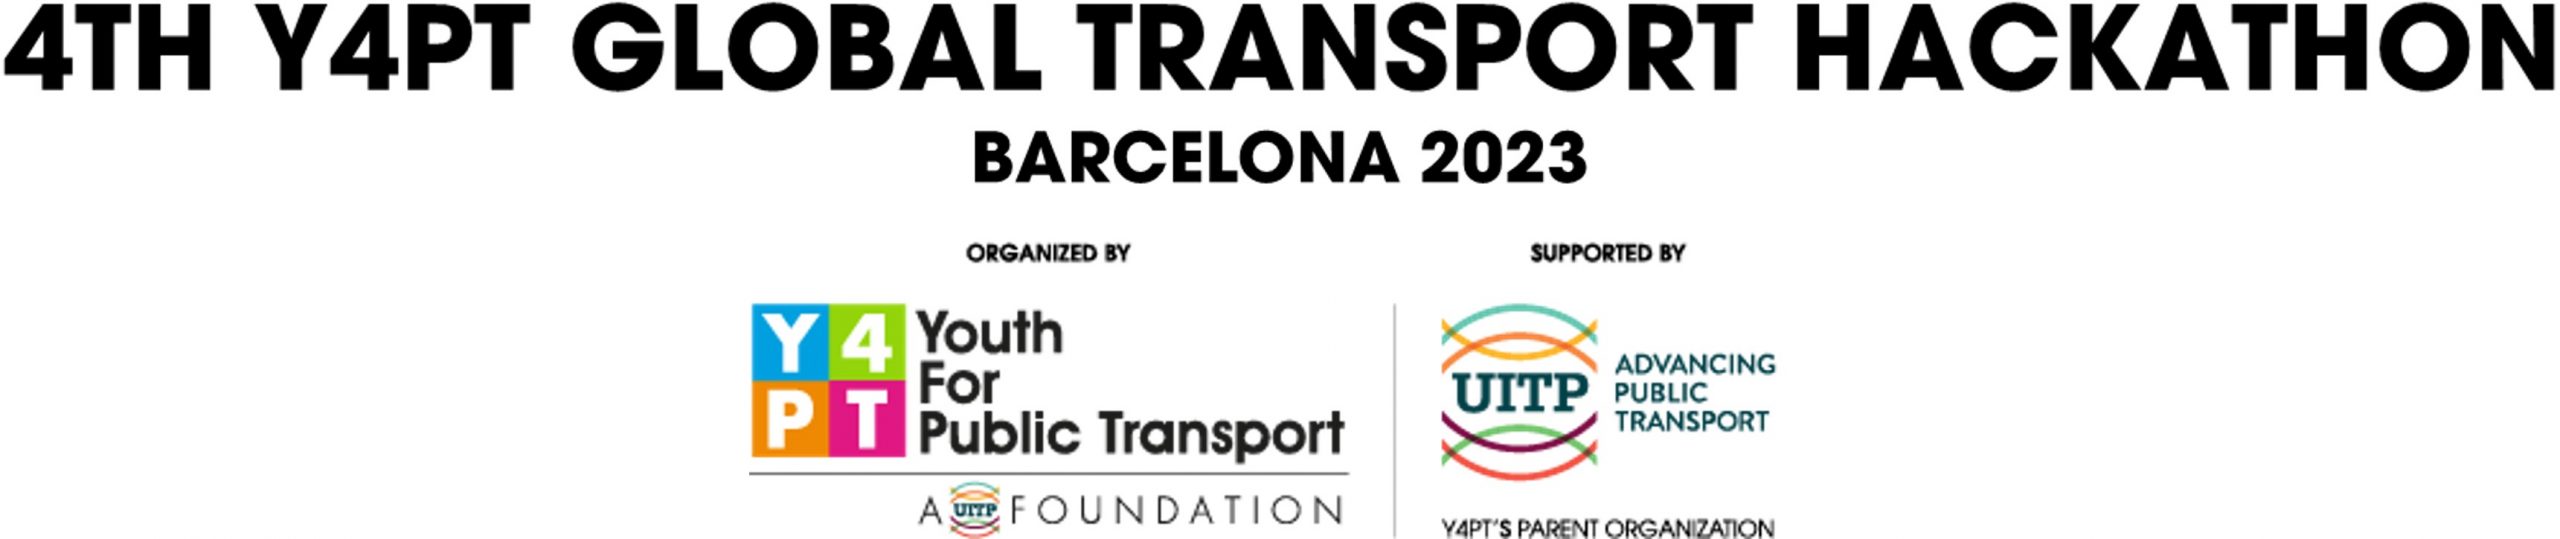 Y4PT-Global-Transport-Hackathon